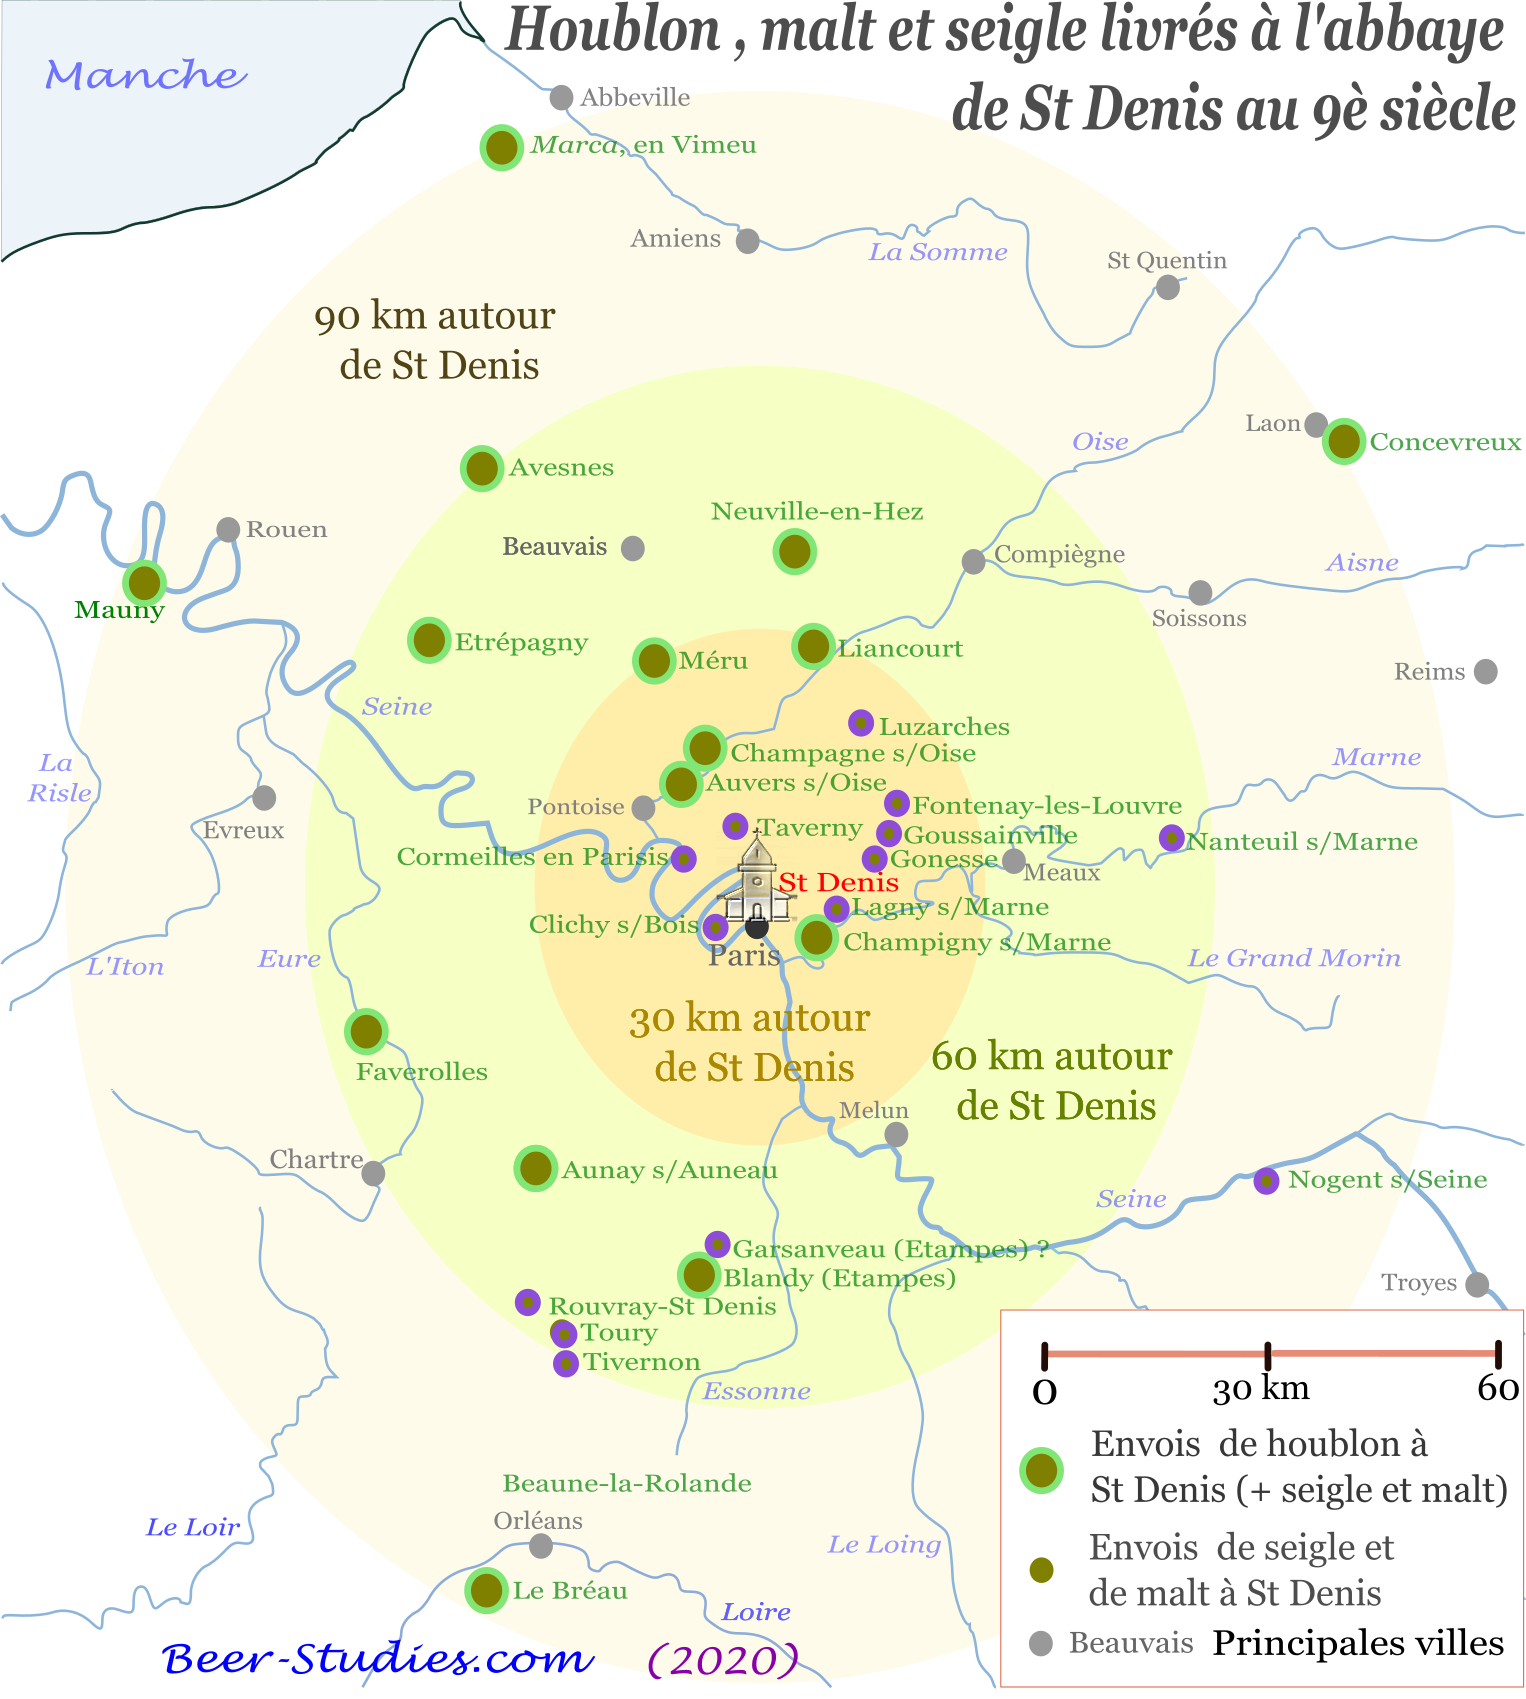 Domaines de l'abbaye de St Denis en 832. Redevances de seigle, malt et houblon.